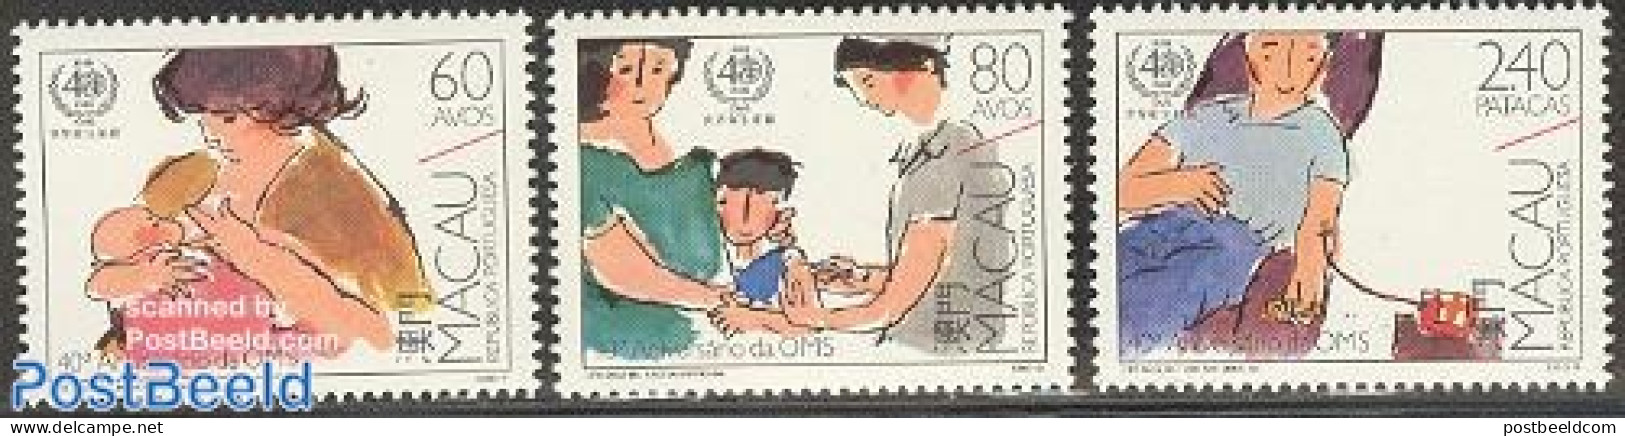 Macao 1988 W.H.O. 3v, Mint NH, Health - Health - Neufs